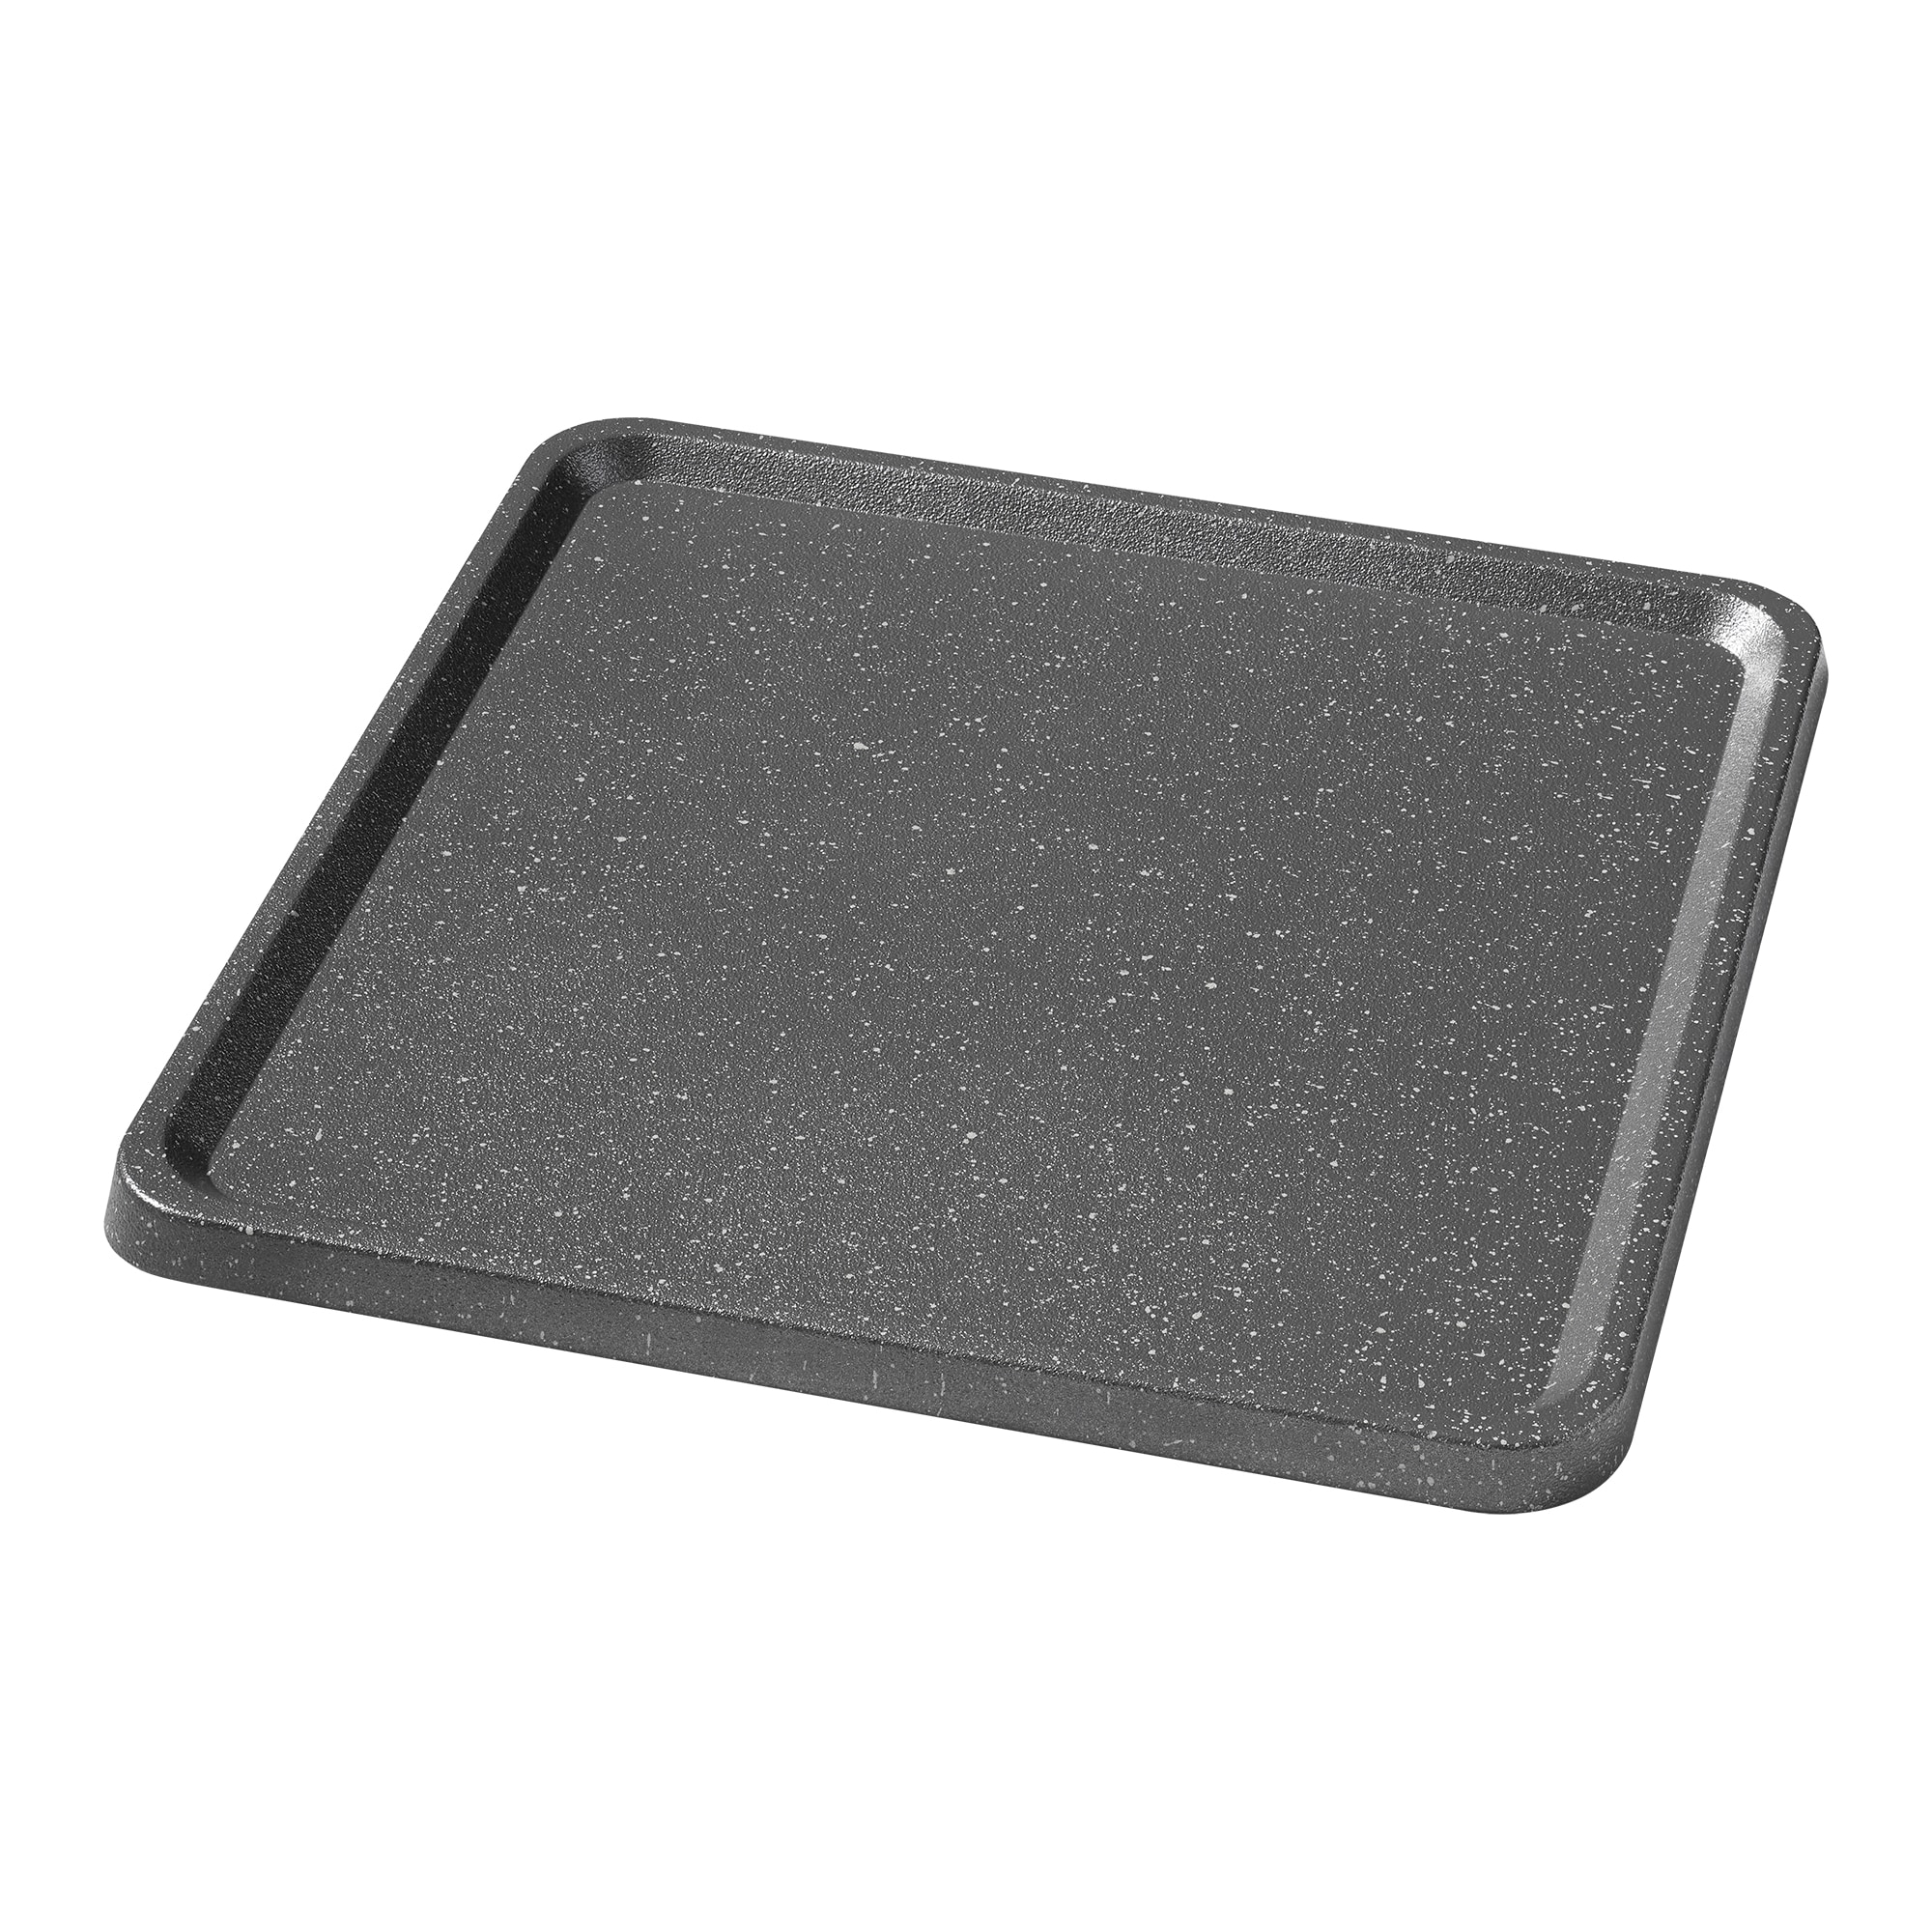 Starfrit Rock Griddle Pan (1 ct)